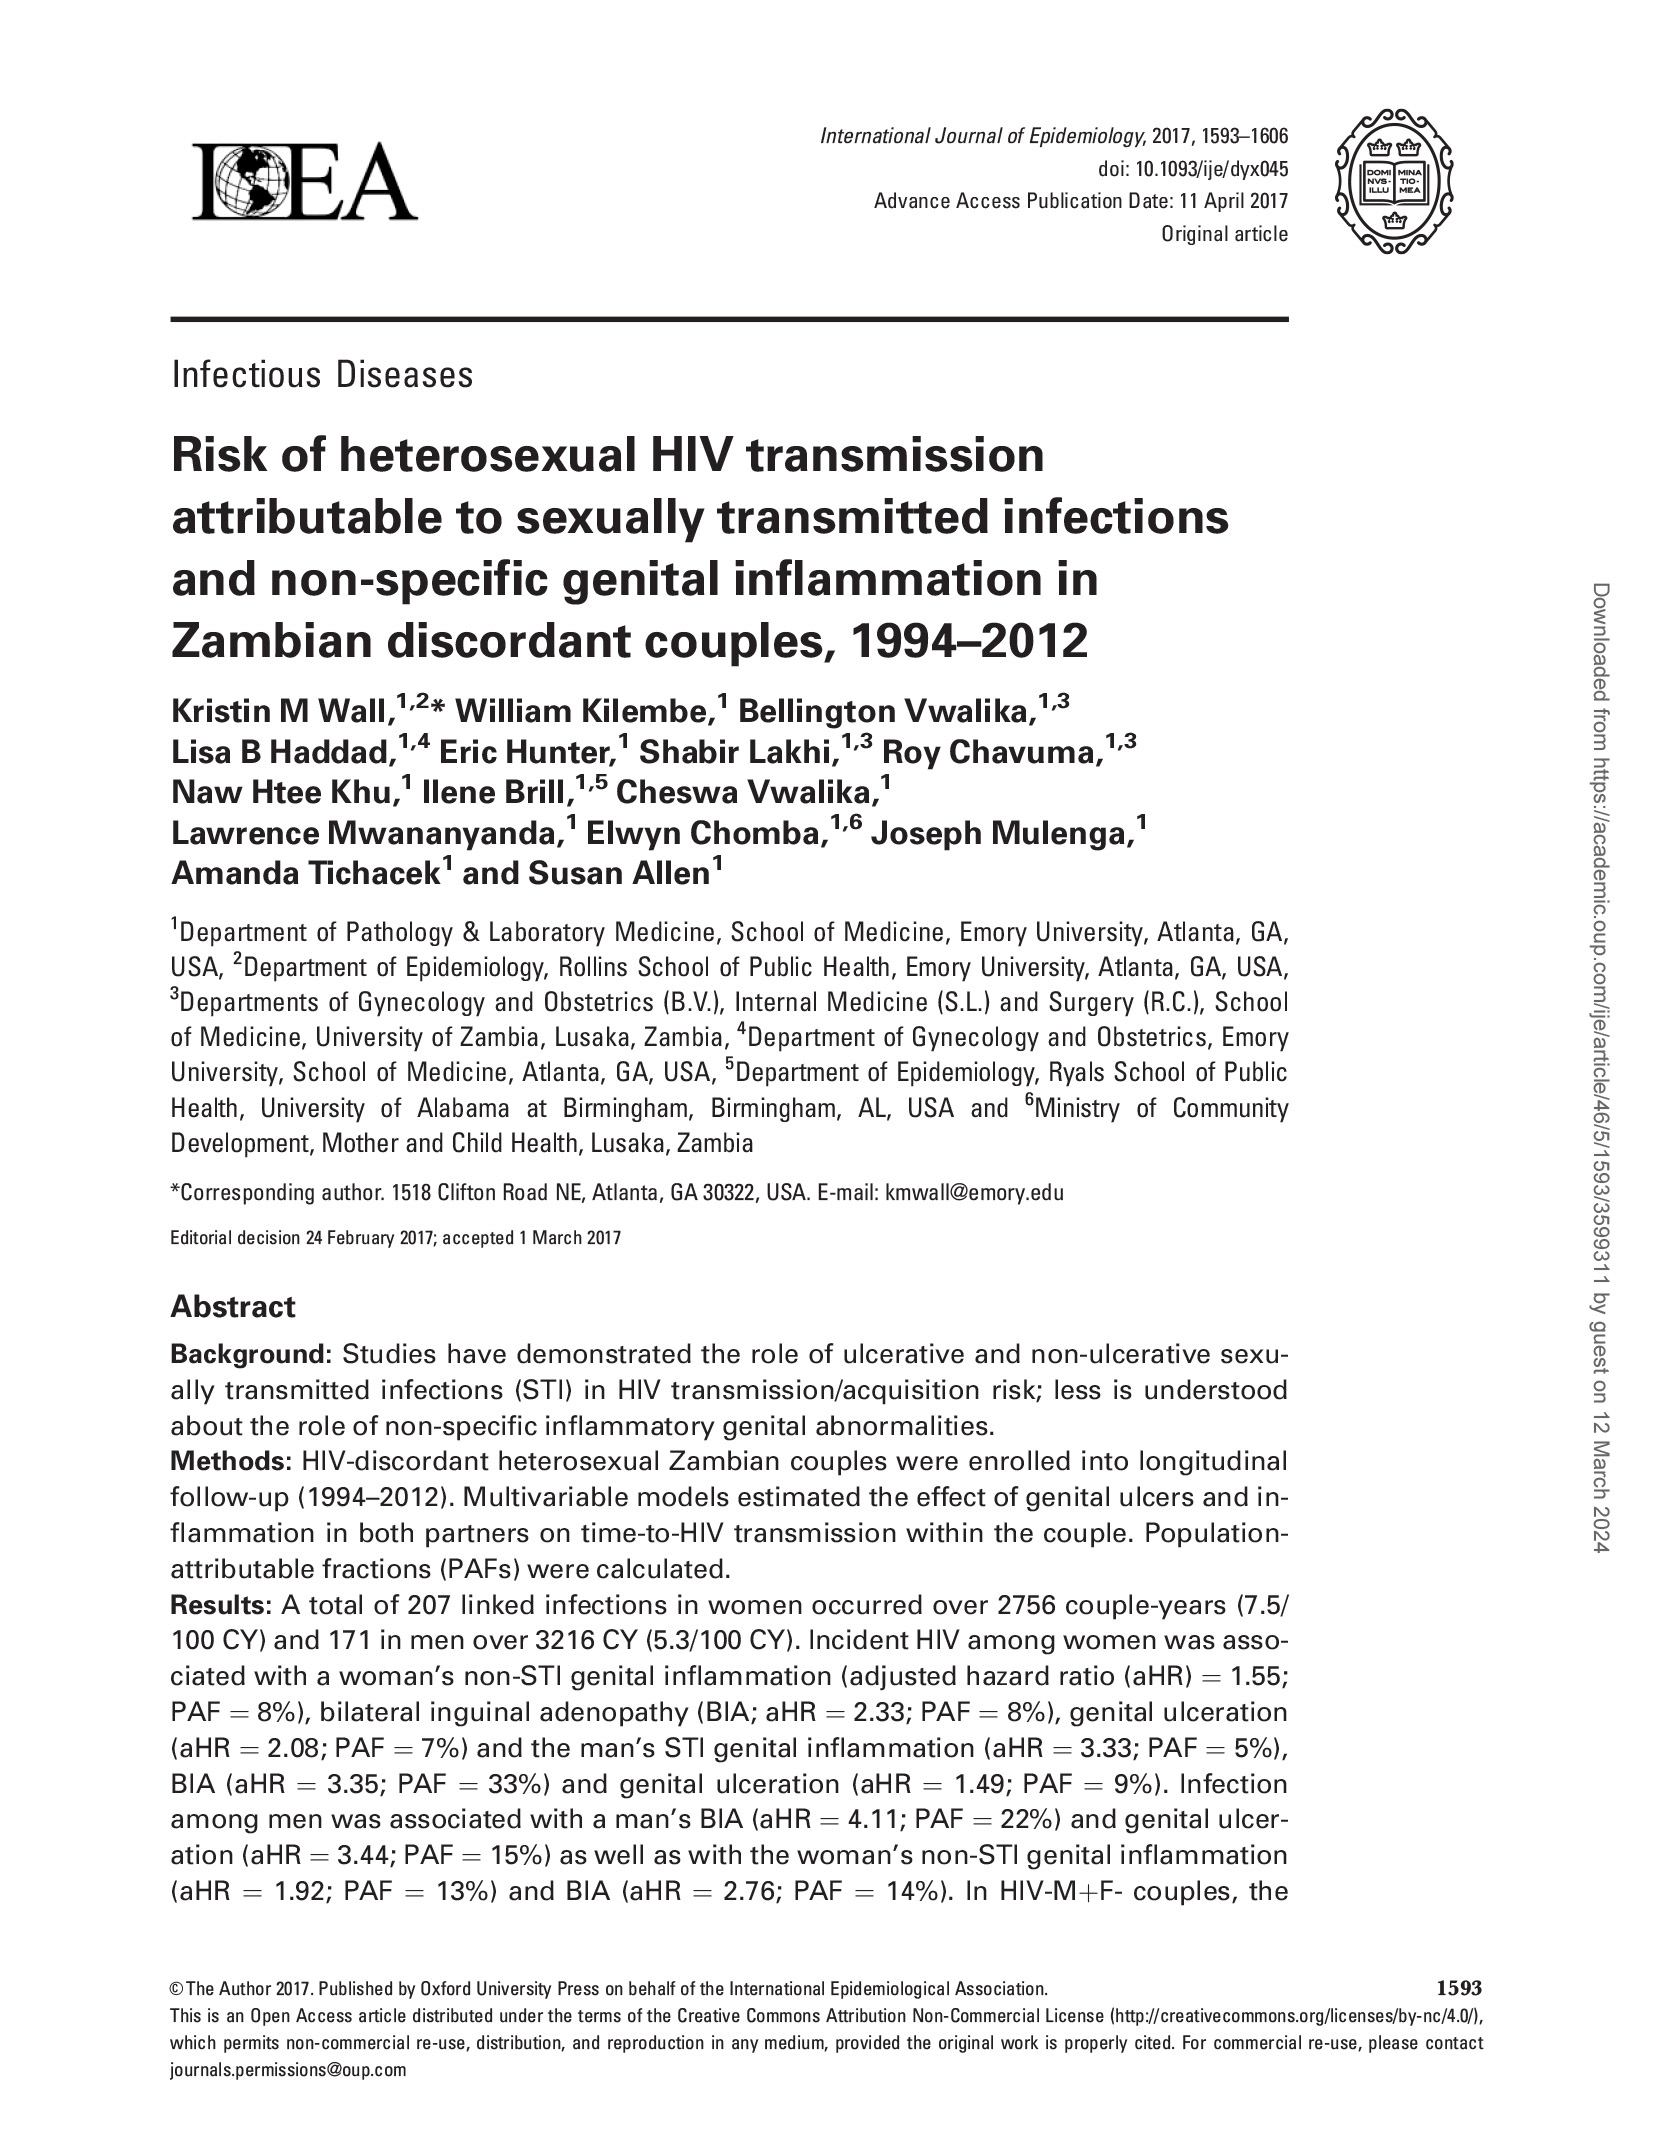 Risque de transmission hétérosexuelle du VIH attribuable aux infections sexuellement transmissibles et à l'inflammation génitale non spécifique chez les couples zambiens discordants - couverture